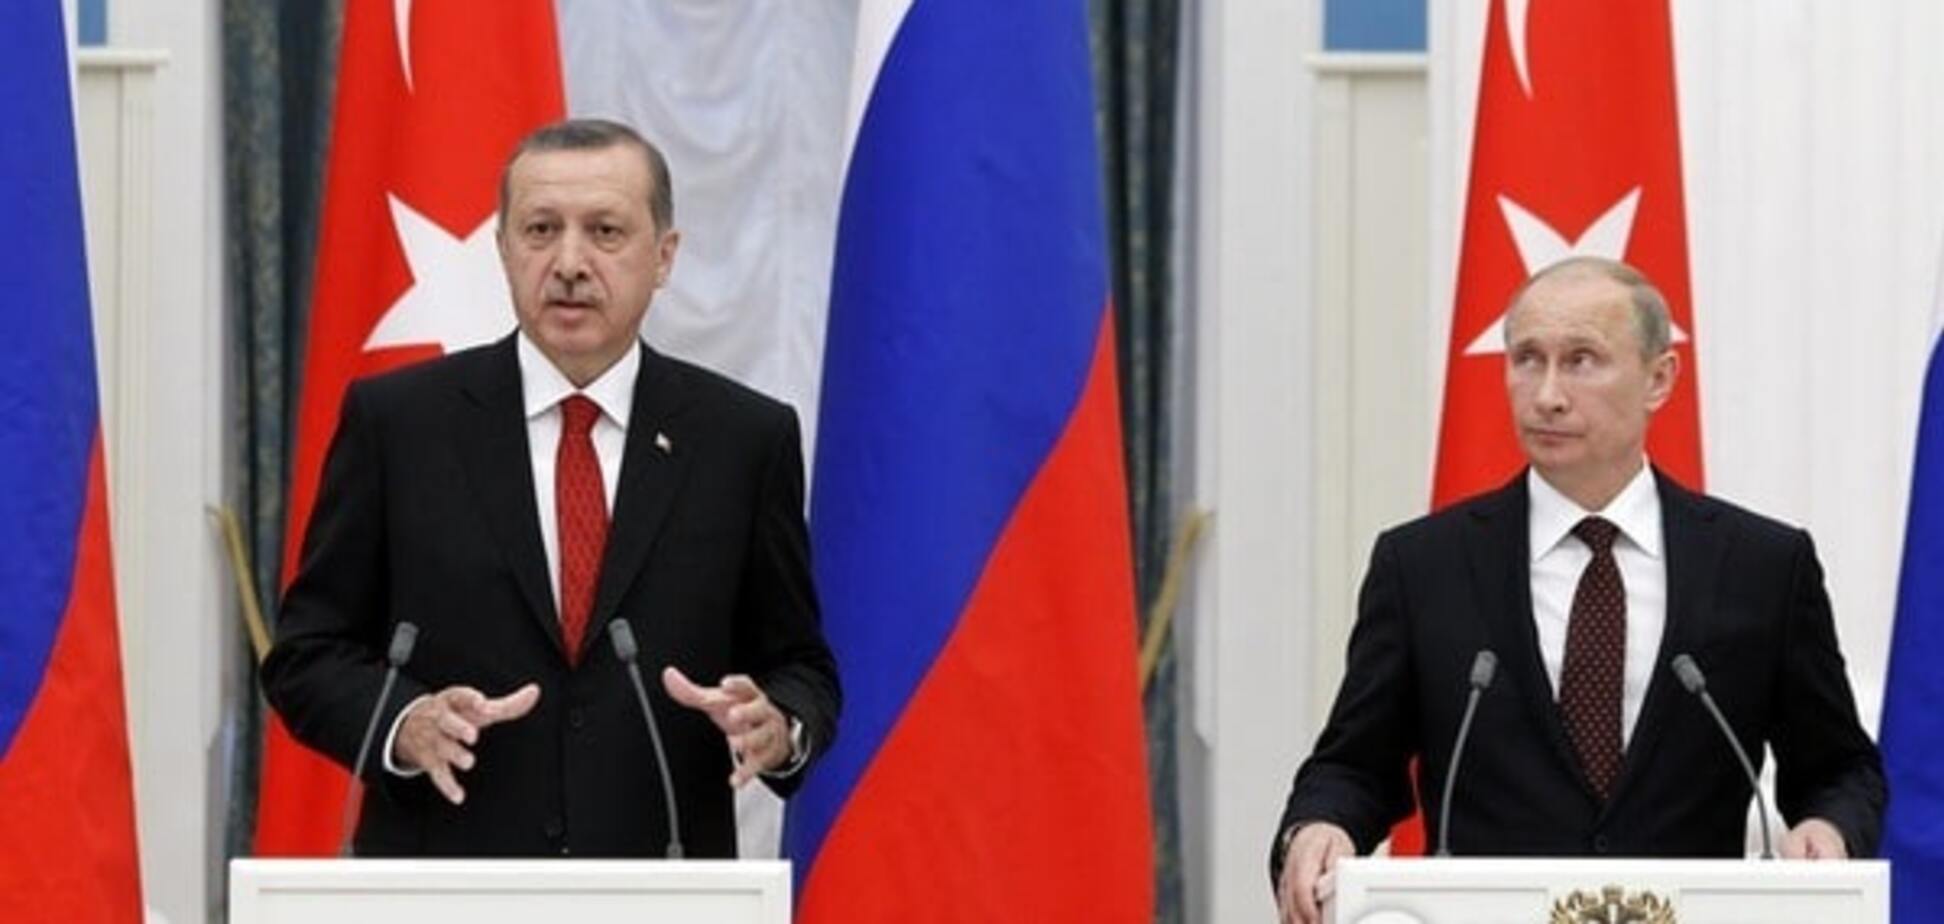 Бывший офицер КГБ: на каждого 'хитрого Путина' найдется свой Эрдоган с резьбой